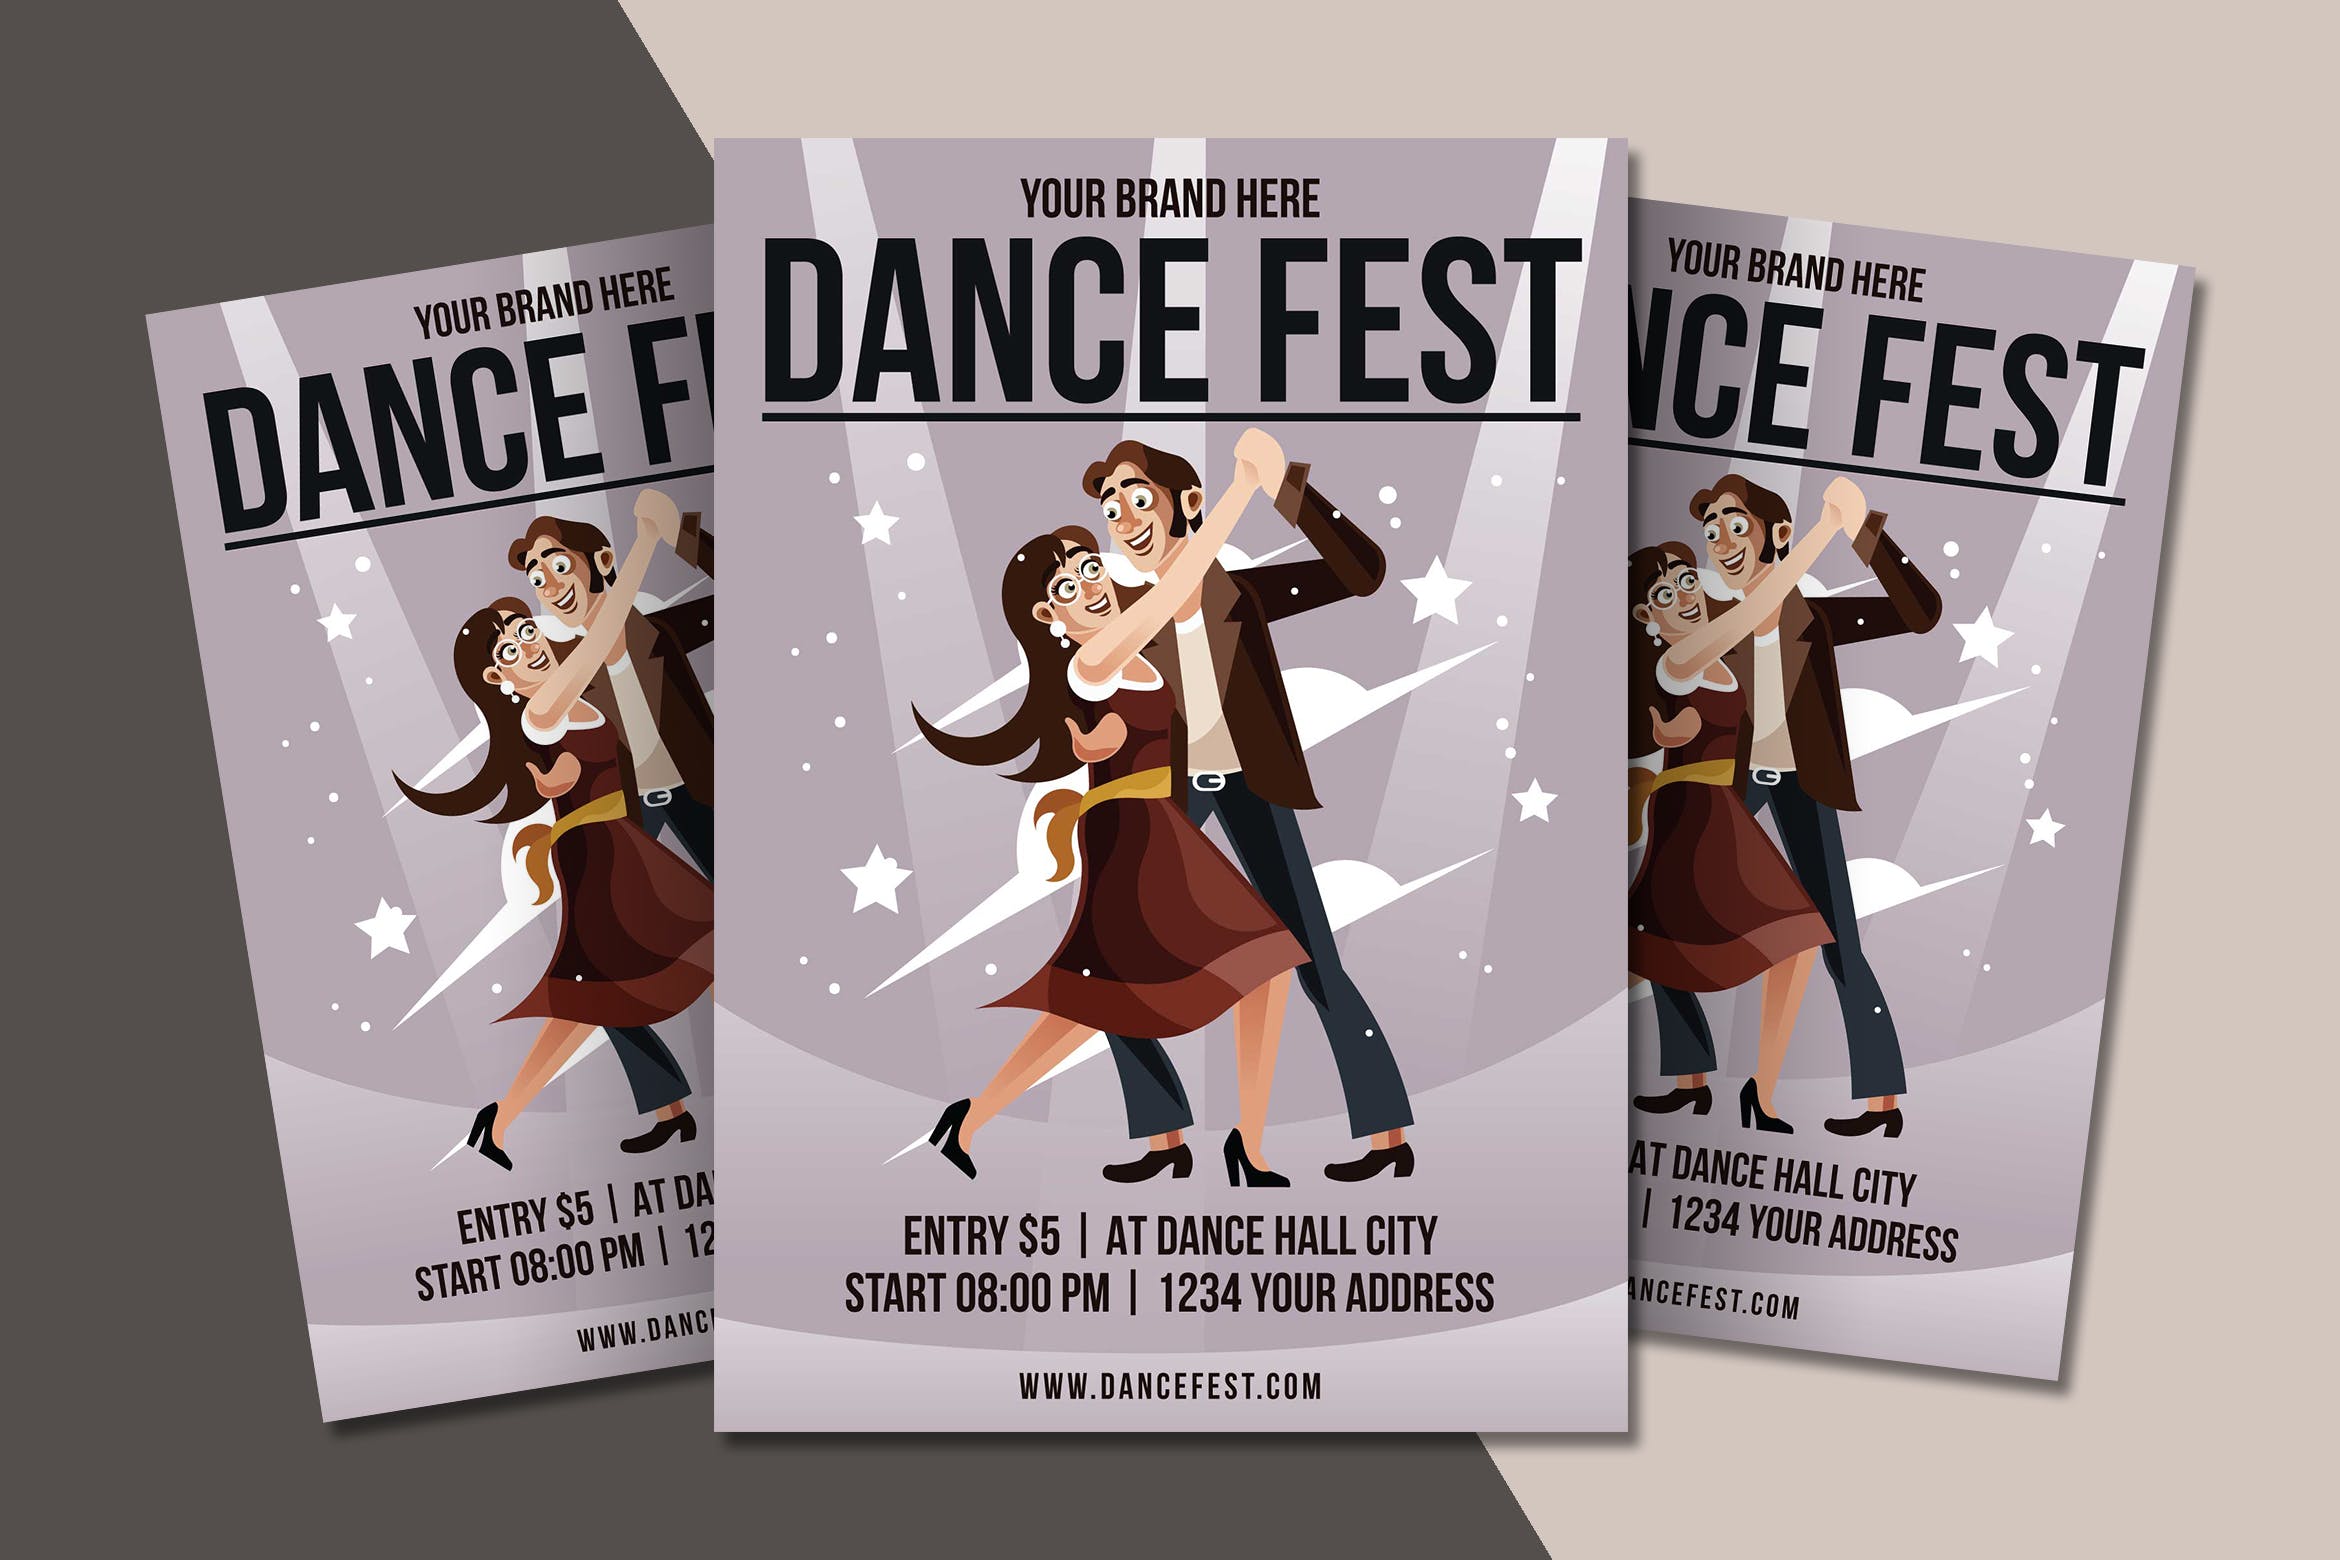 舞蹈节活动宣传/舞蹈培训机构宣传海报传单设计模板 Dance Festival Flyer Template插图